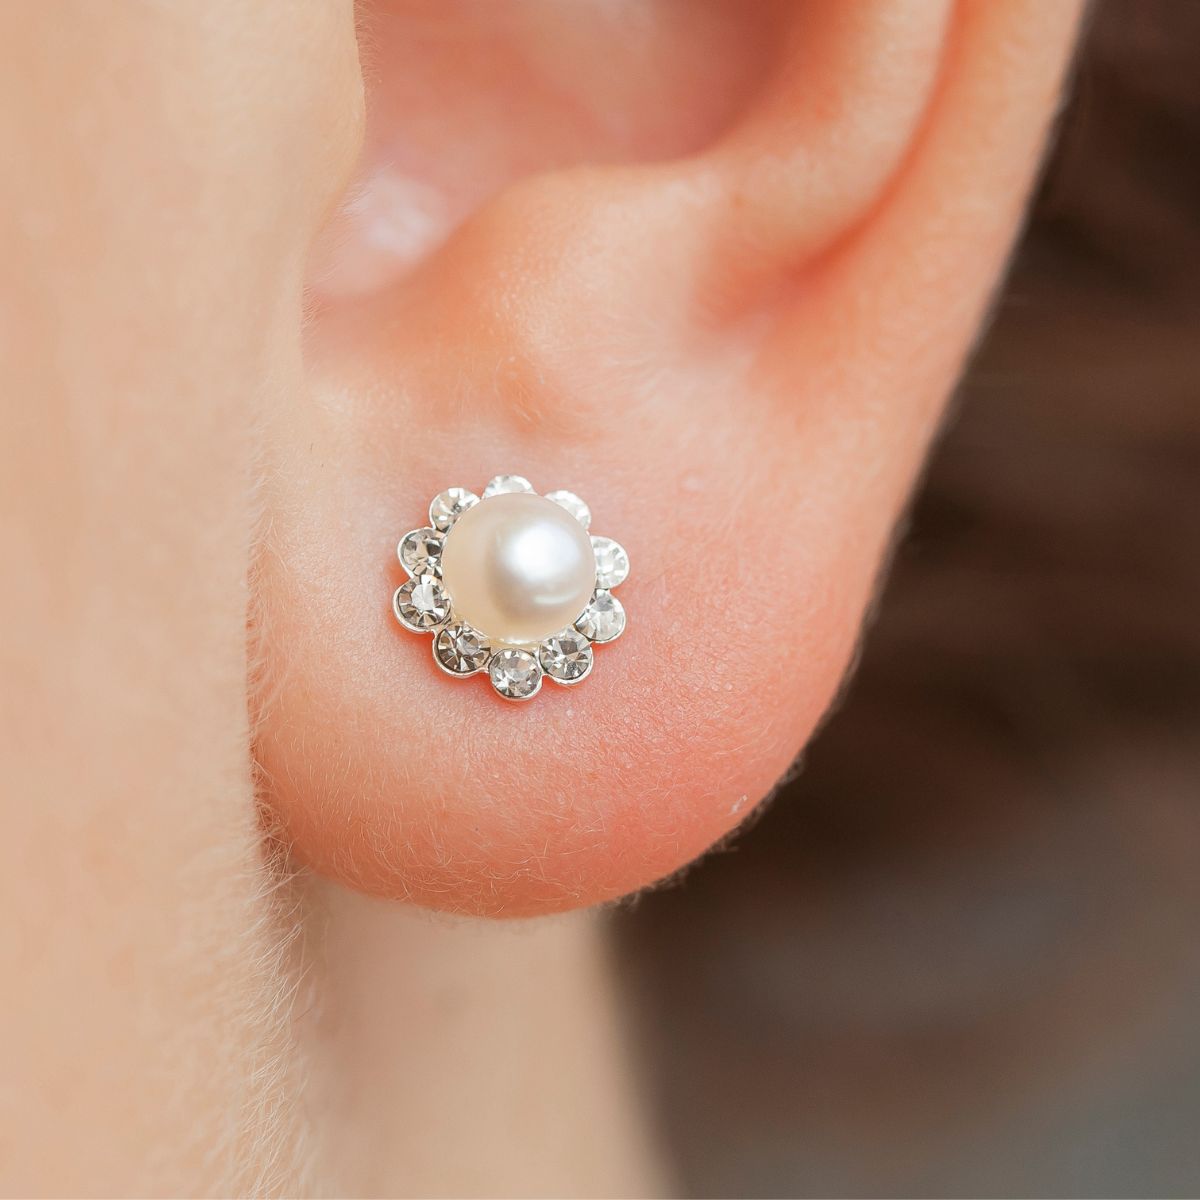 A flower stud earring